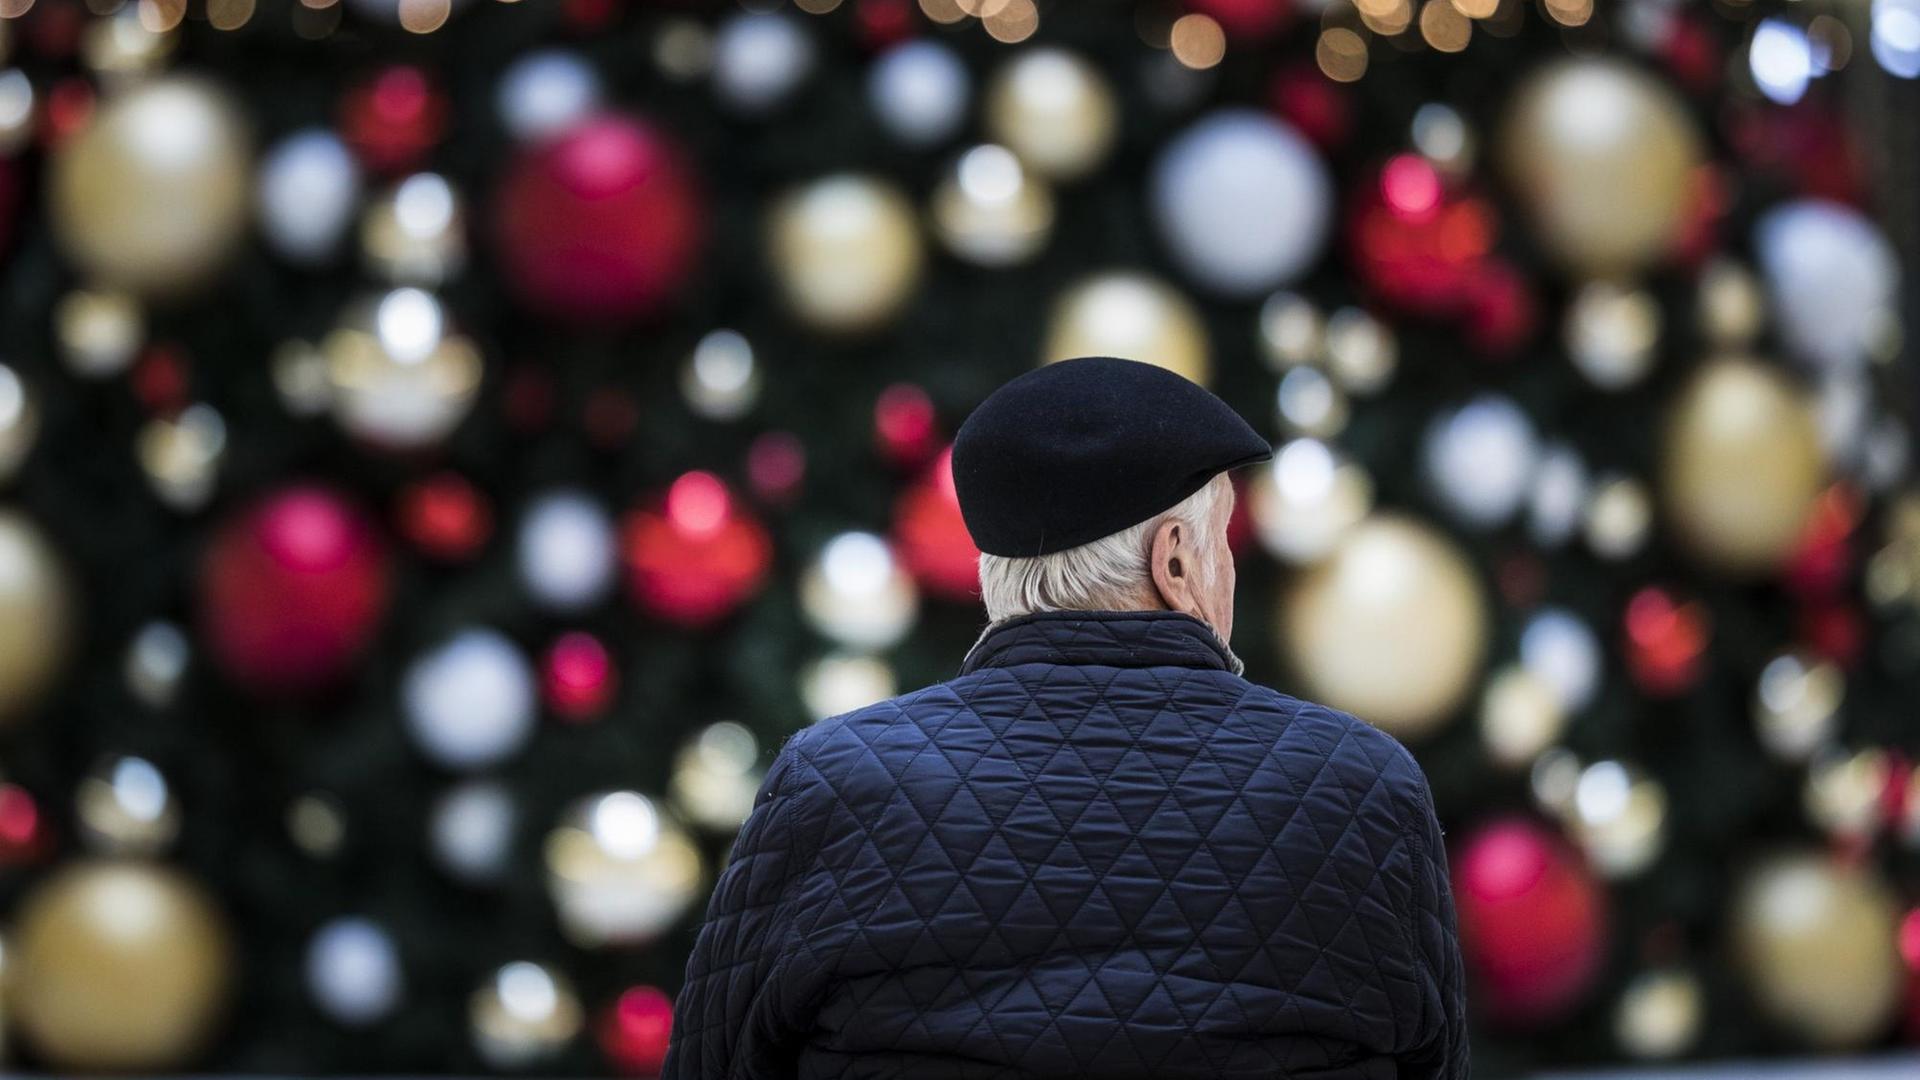 Ein Mann sitzt allein auf einer Bank vor einem geschmückten Weihnachtsbaum, aufgenommen am 17. Dezember 2019 in Berlin.